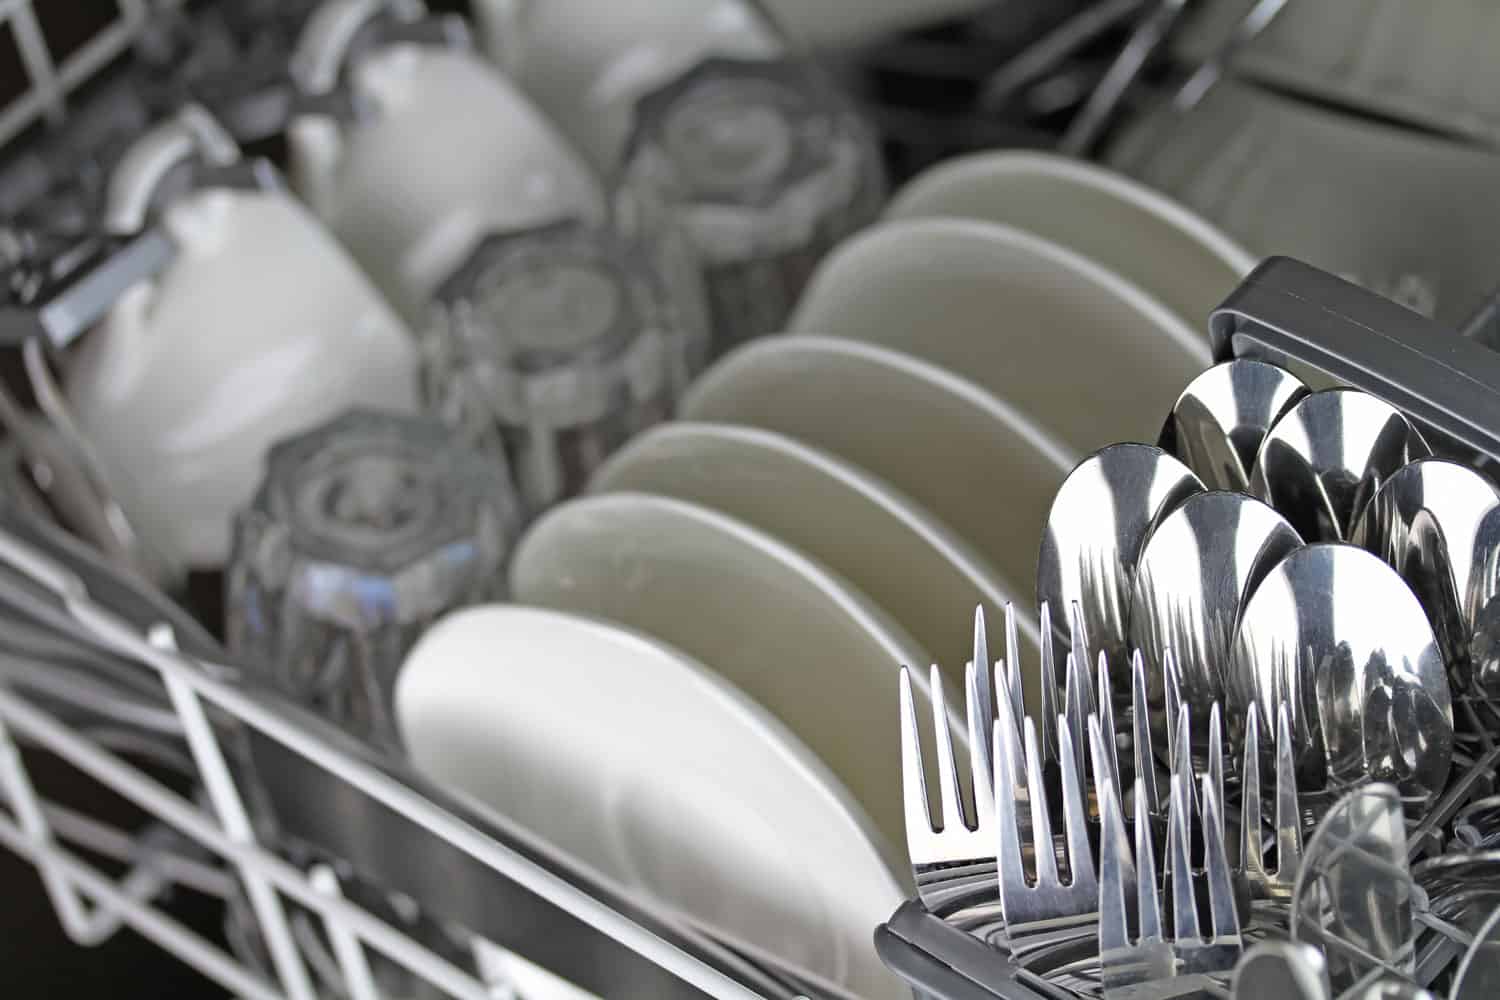 把盘子和厨房用具放在洗碗机里清洗干bd手机下载净